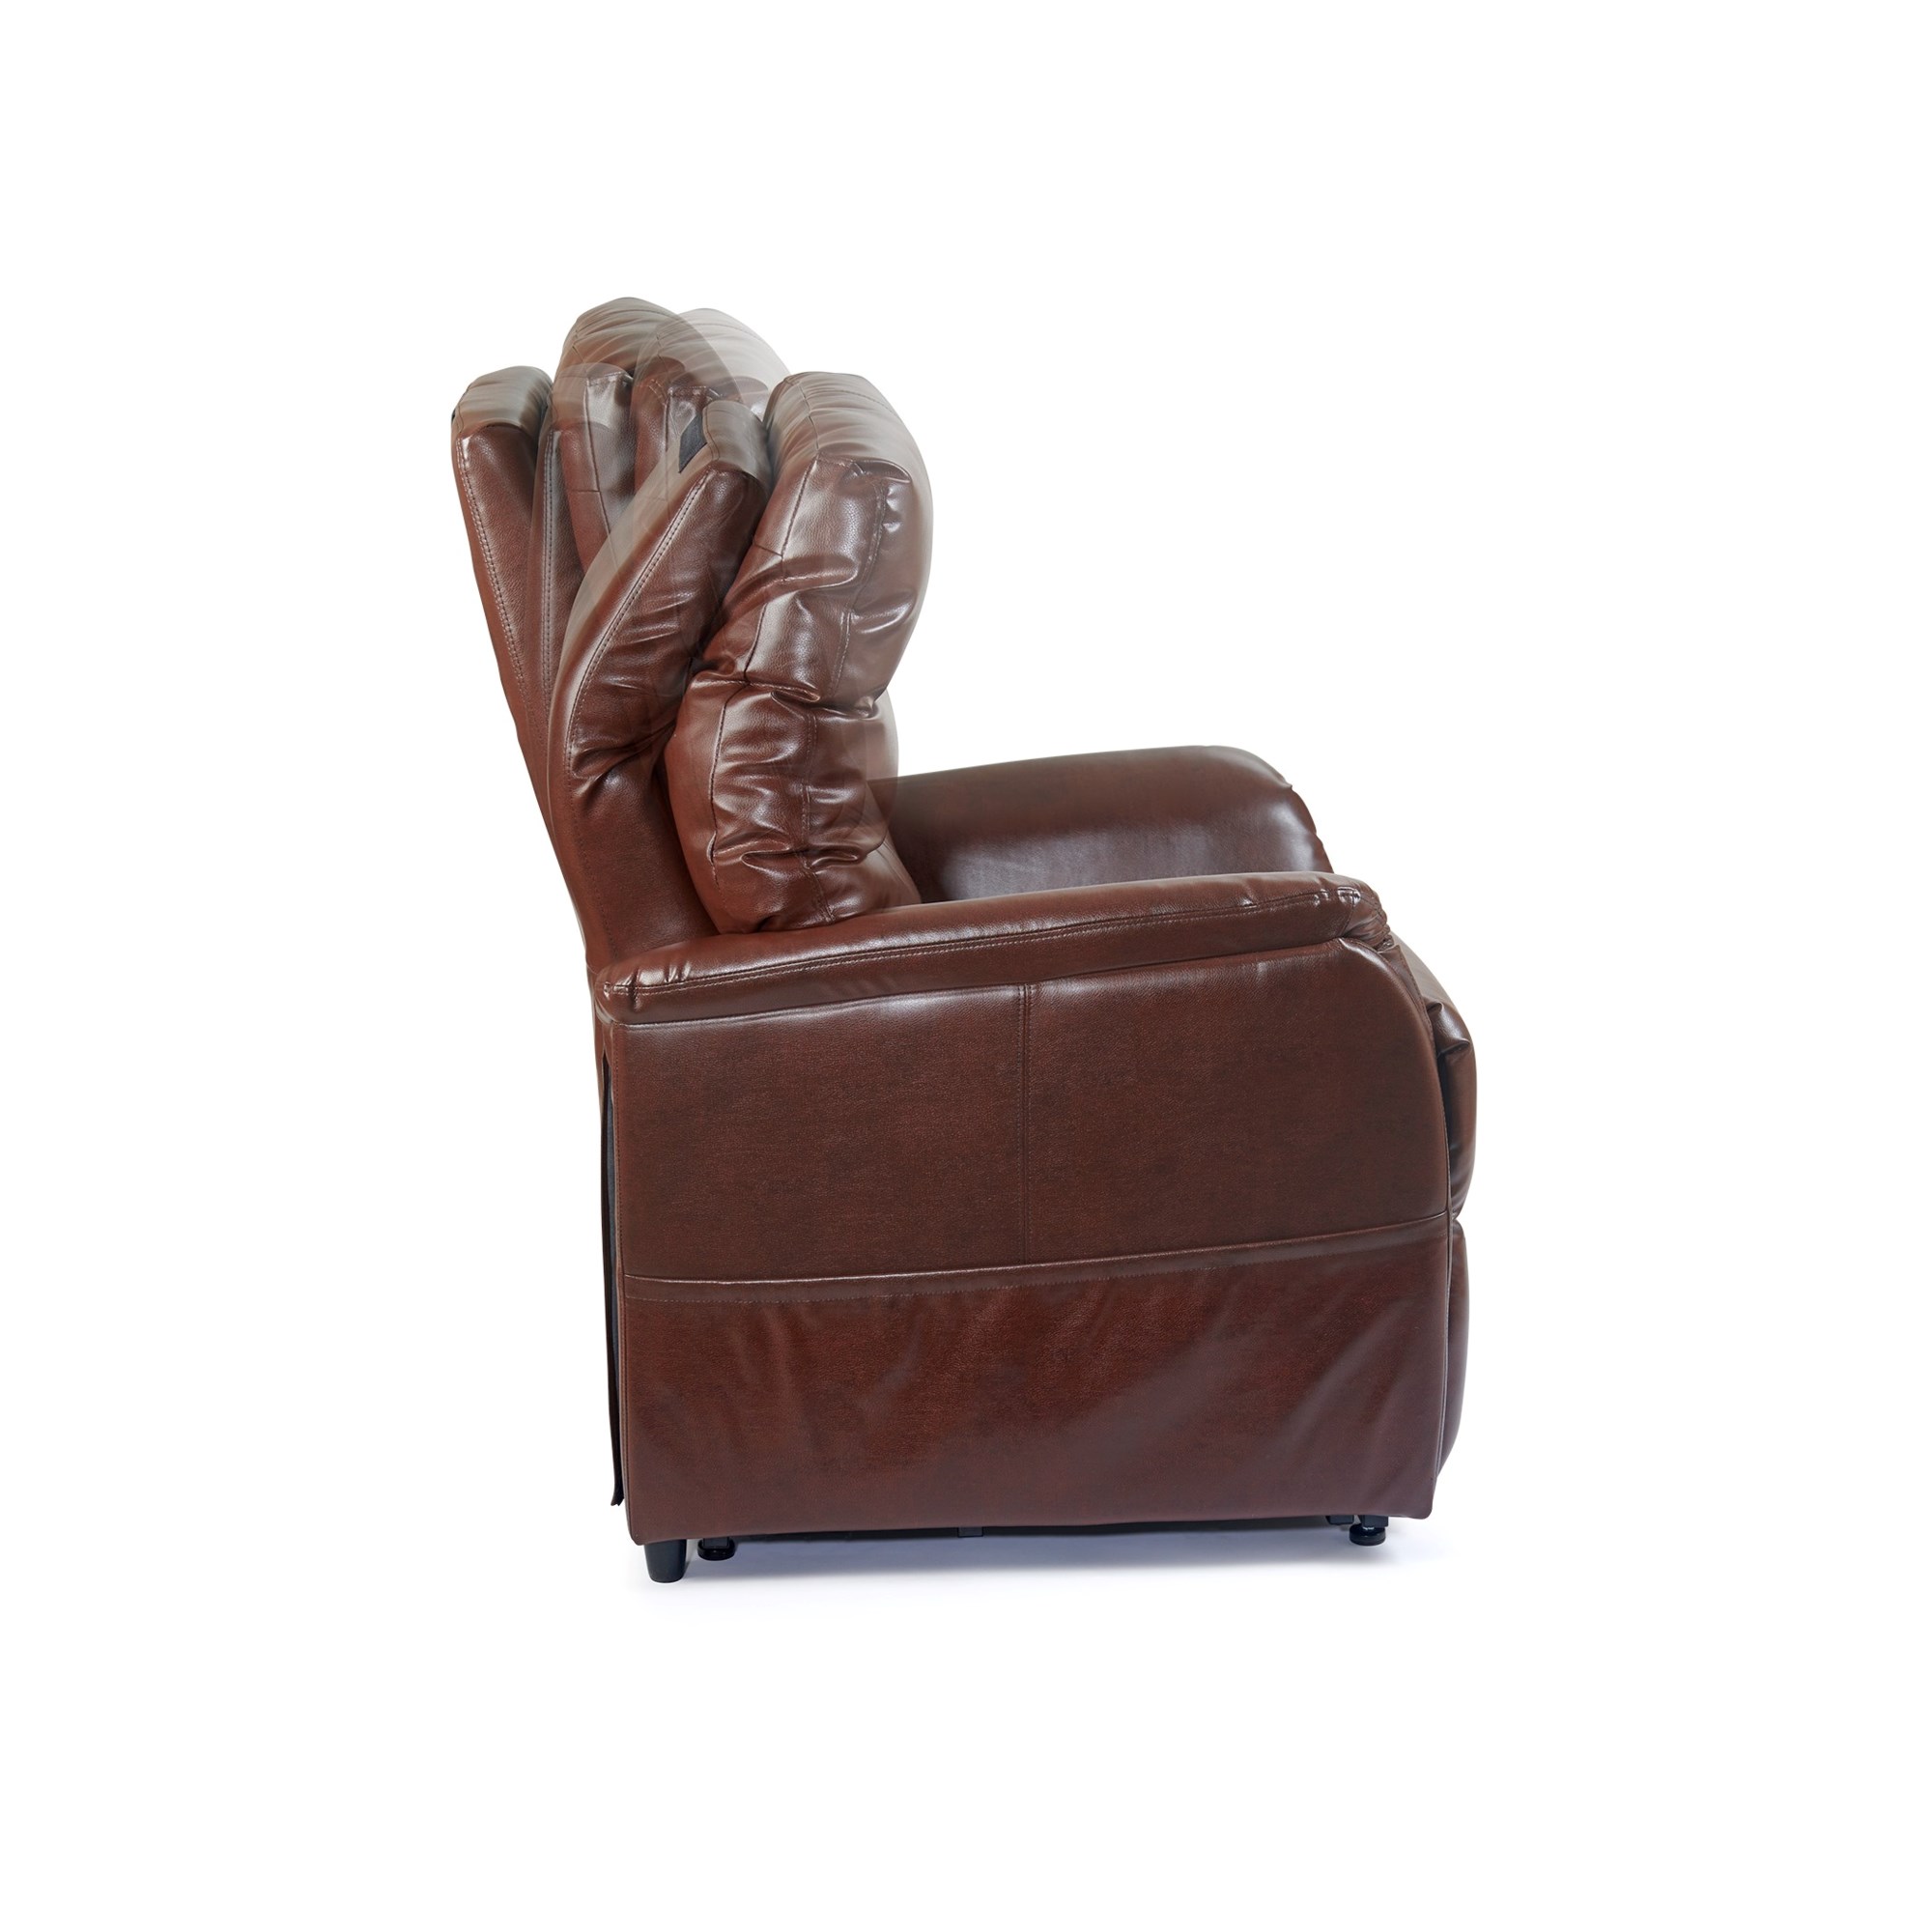 Ultra Comfort Rhodes UC472 Lift Chair Recliner —